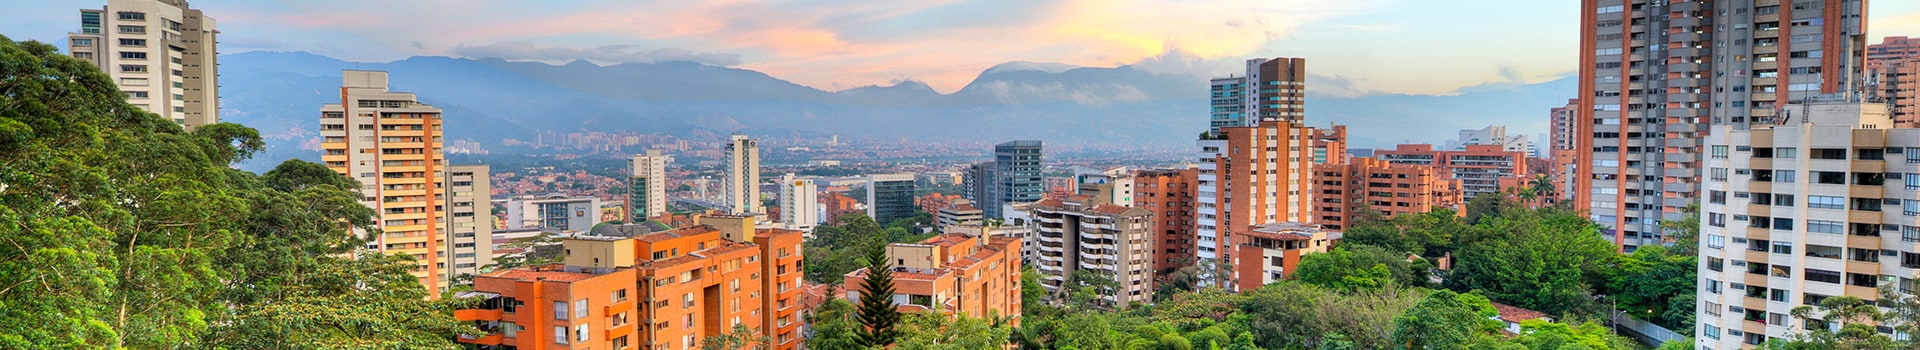 Panama city - Medellín - jose marie cordova